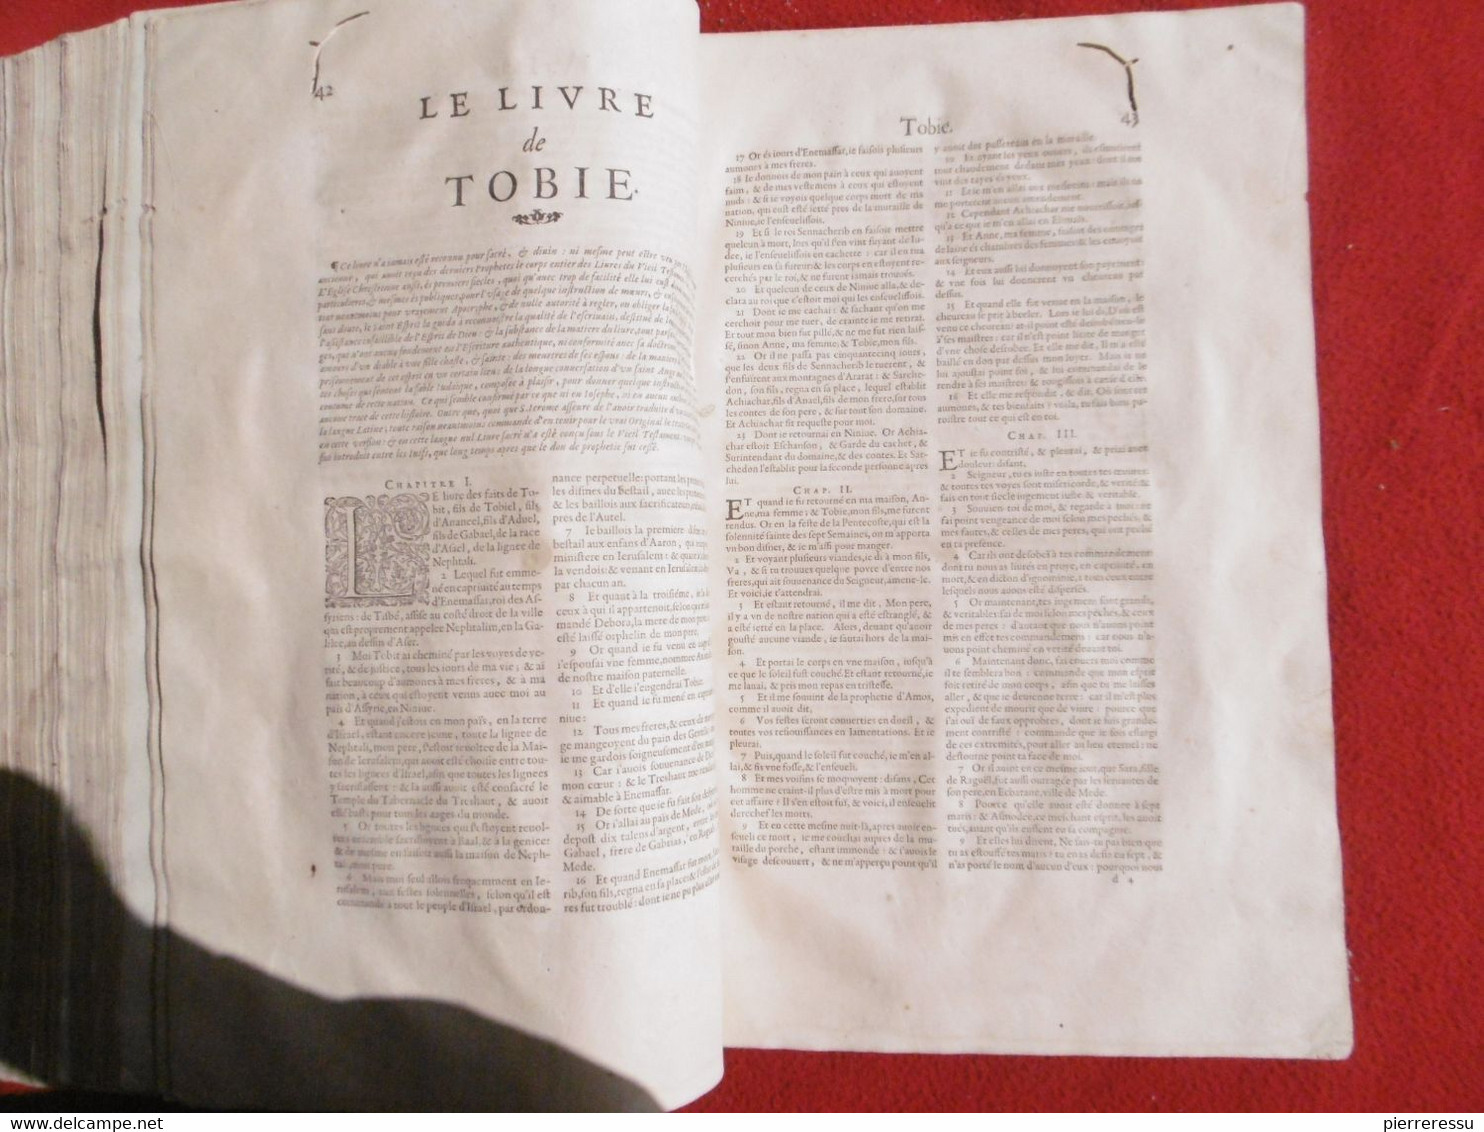 LA SAINTE BIBLE INTERPRETEE PAR JEAN DIODATI 1644 GENEVE PIERRE CHOUET RRRRRRRRRRRR